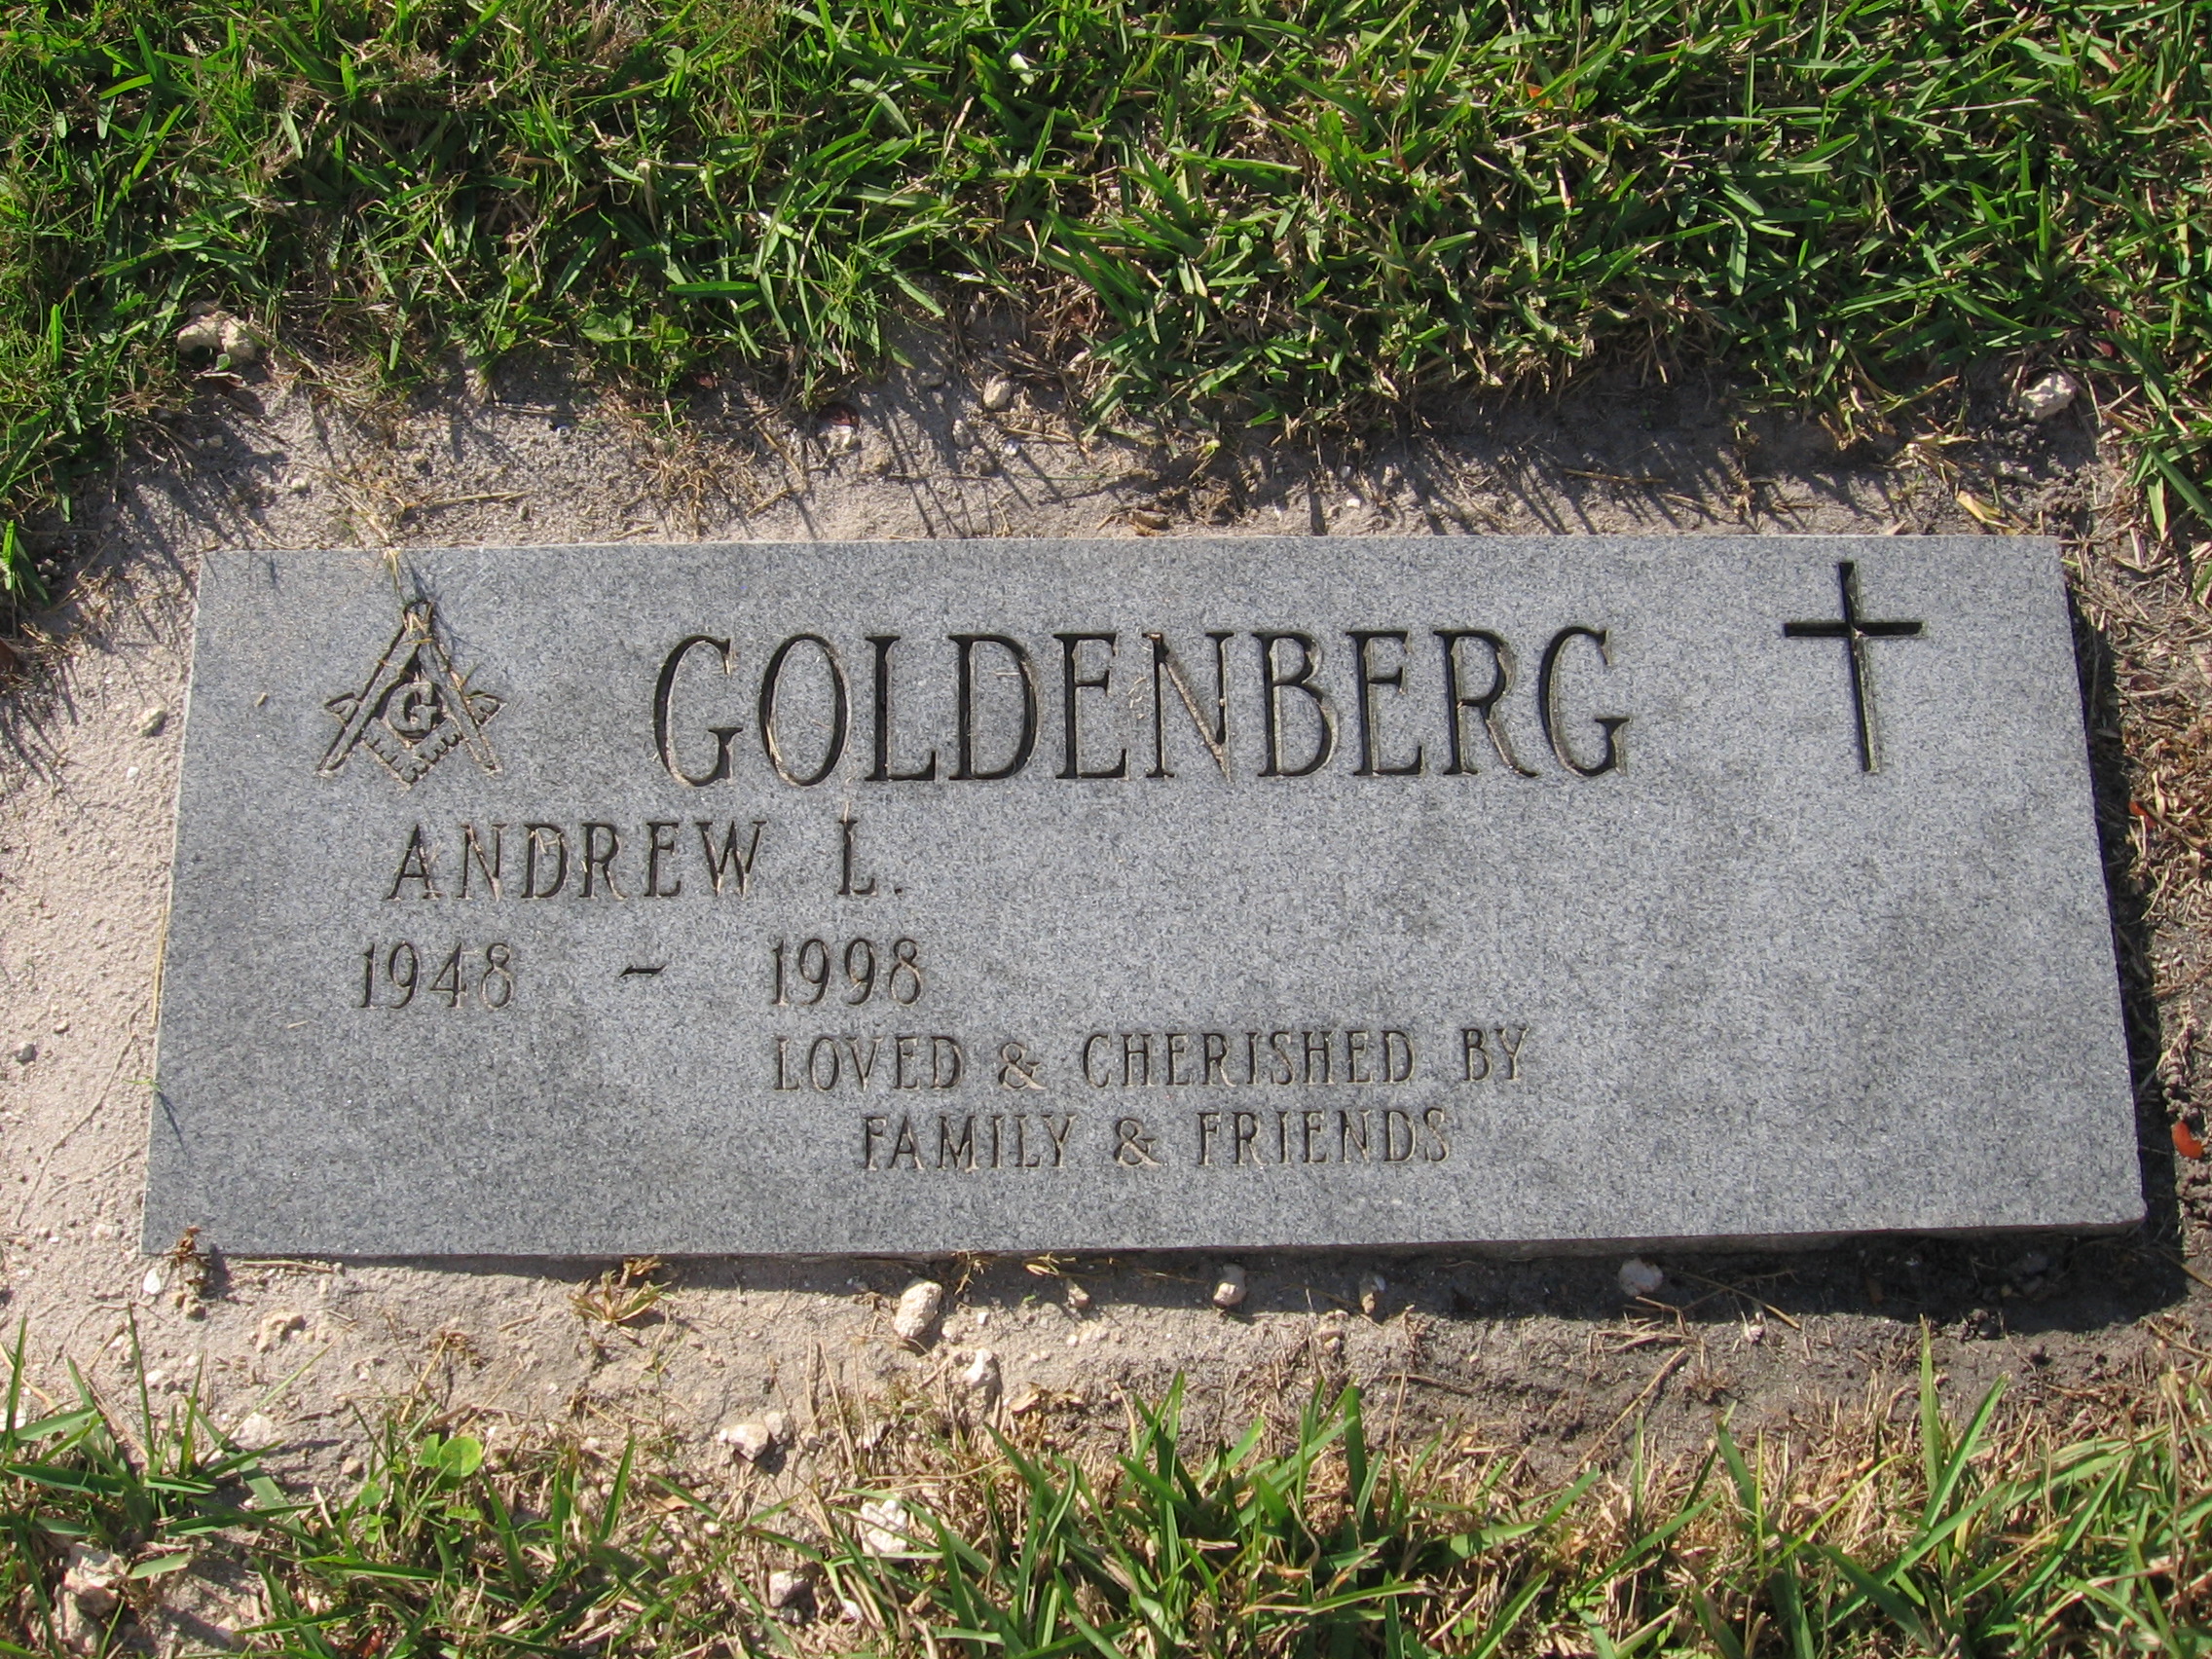 Andrew L Goldenberg